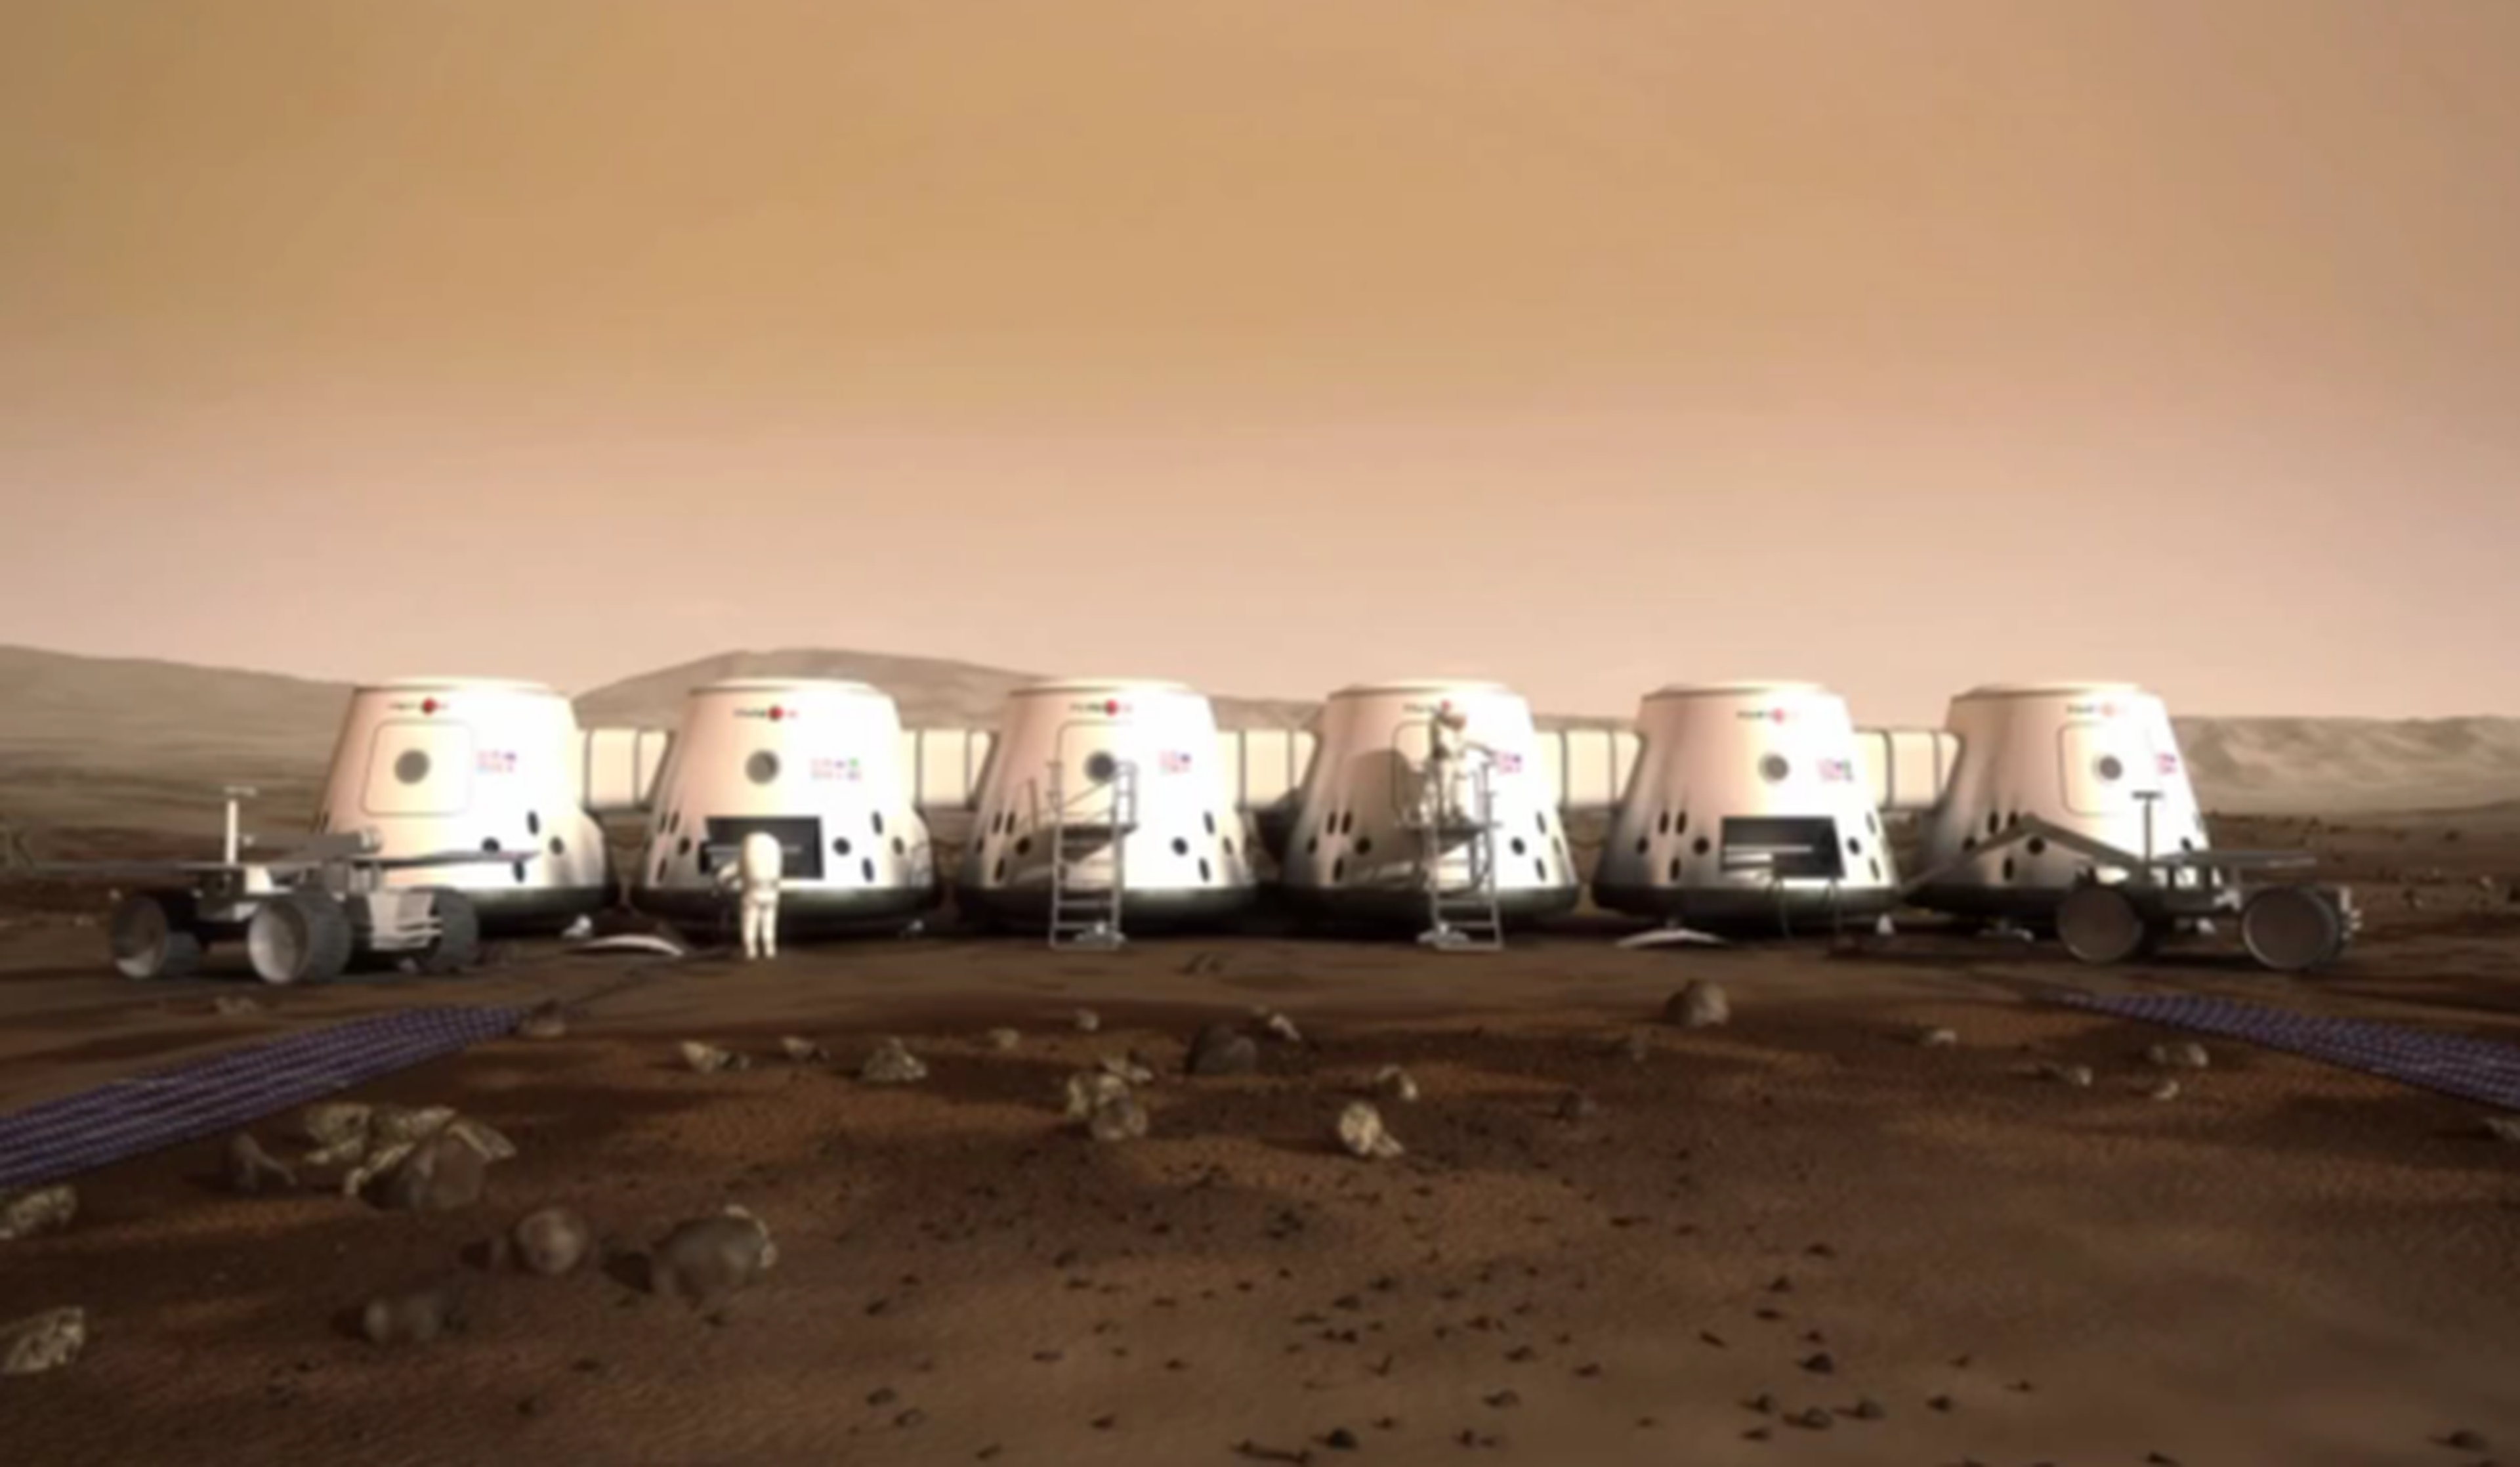 IlustraciÃ³n asentamiento propuesto Mars One